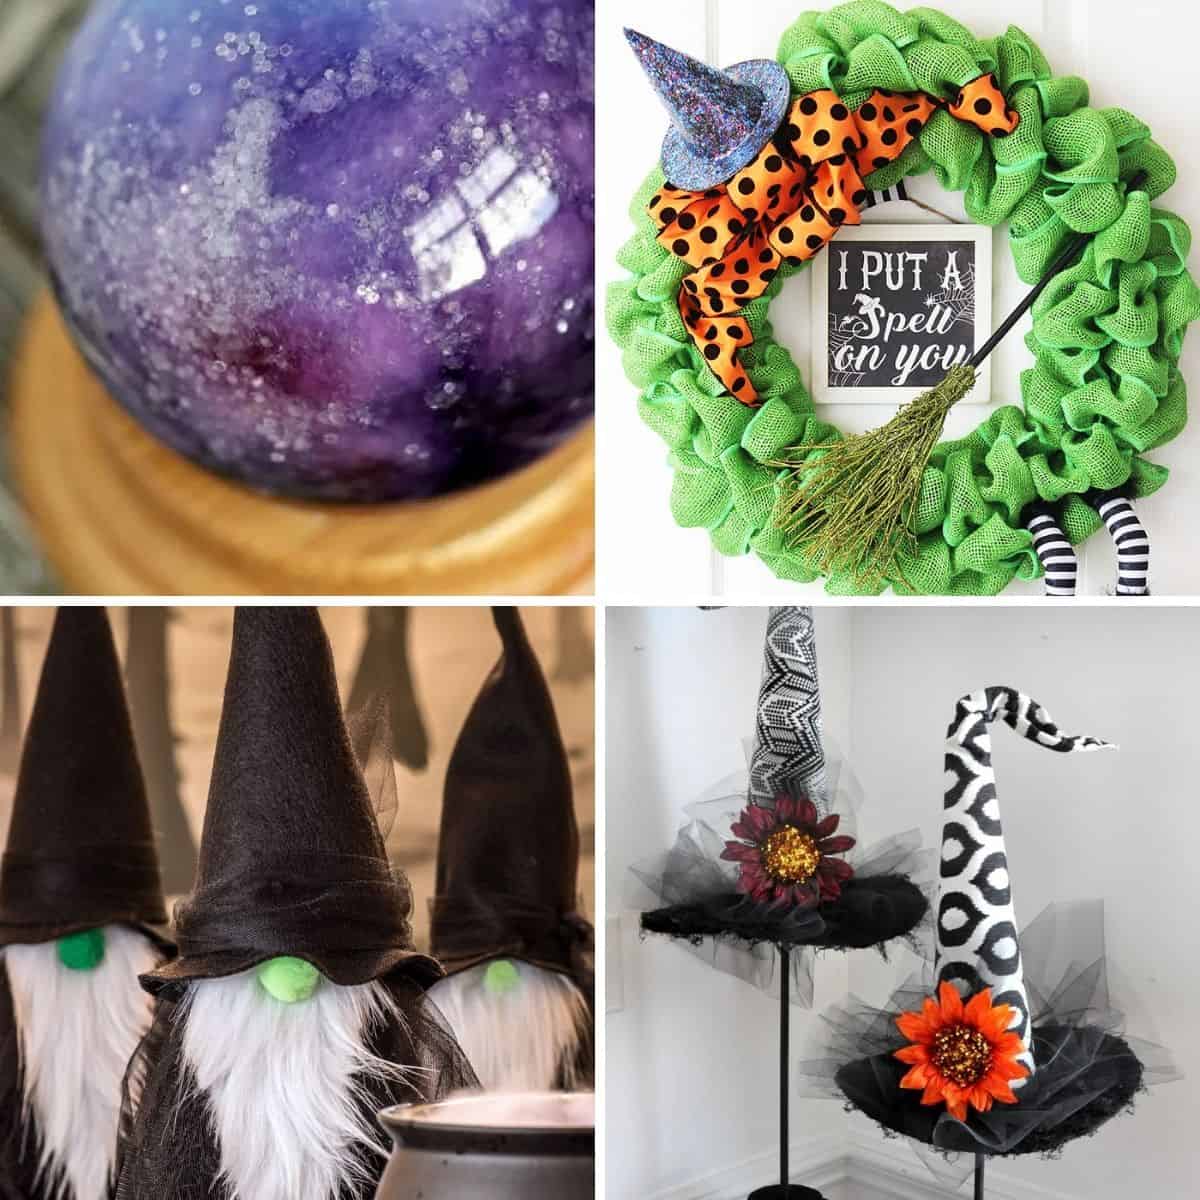 https://thecraftyblogstalker.com/wp-content/uploads/2014/08/easy-witch-crafts-halloween-2.jpg